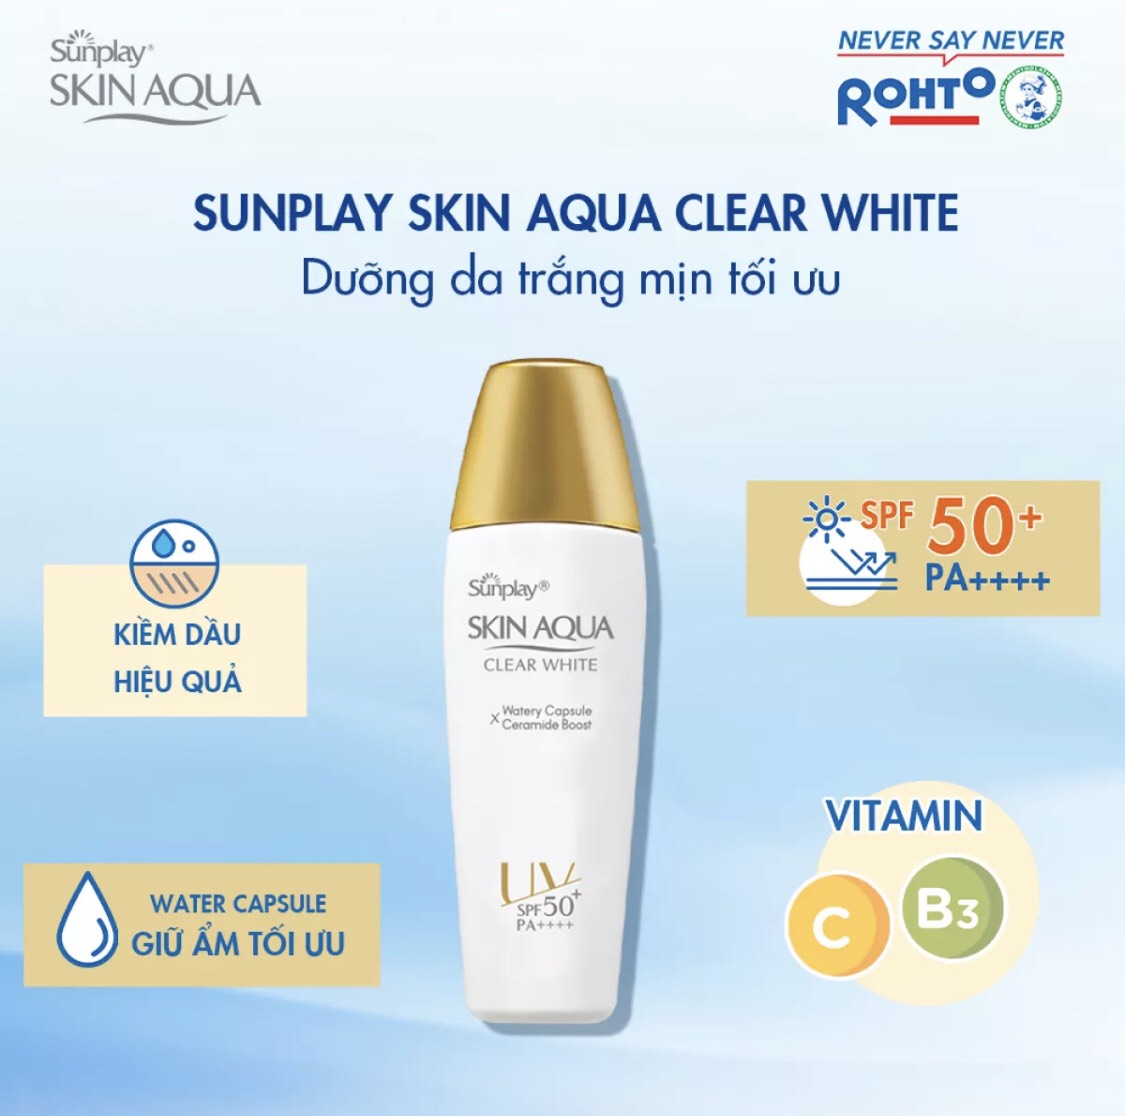 Sữa Chống Nắng Hằng Ngày Dưỡng Trắng Sunplay Skin Aqua Clear White SPF 50+, PA++++ (25g)